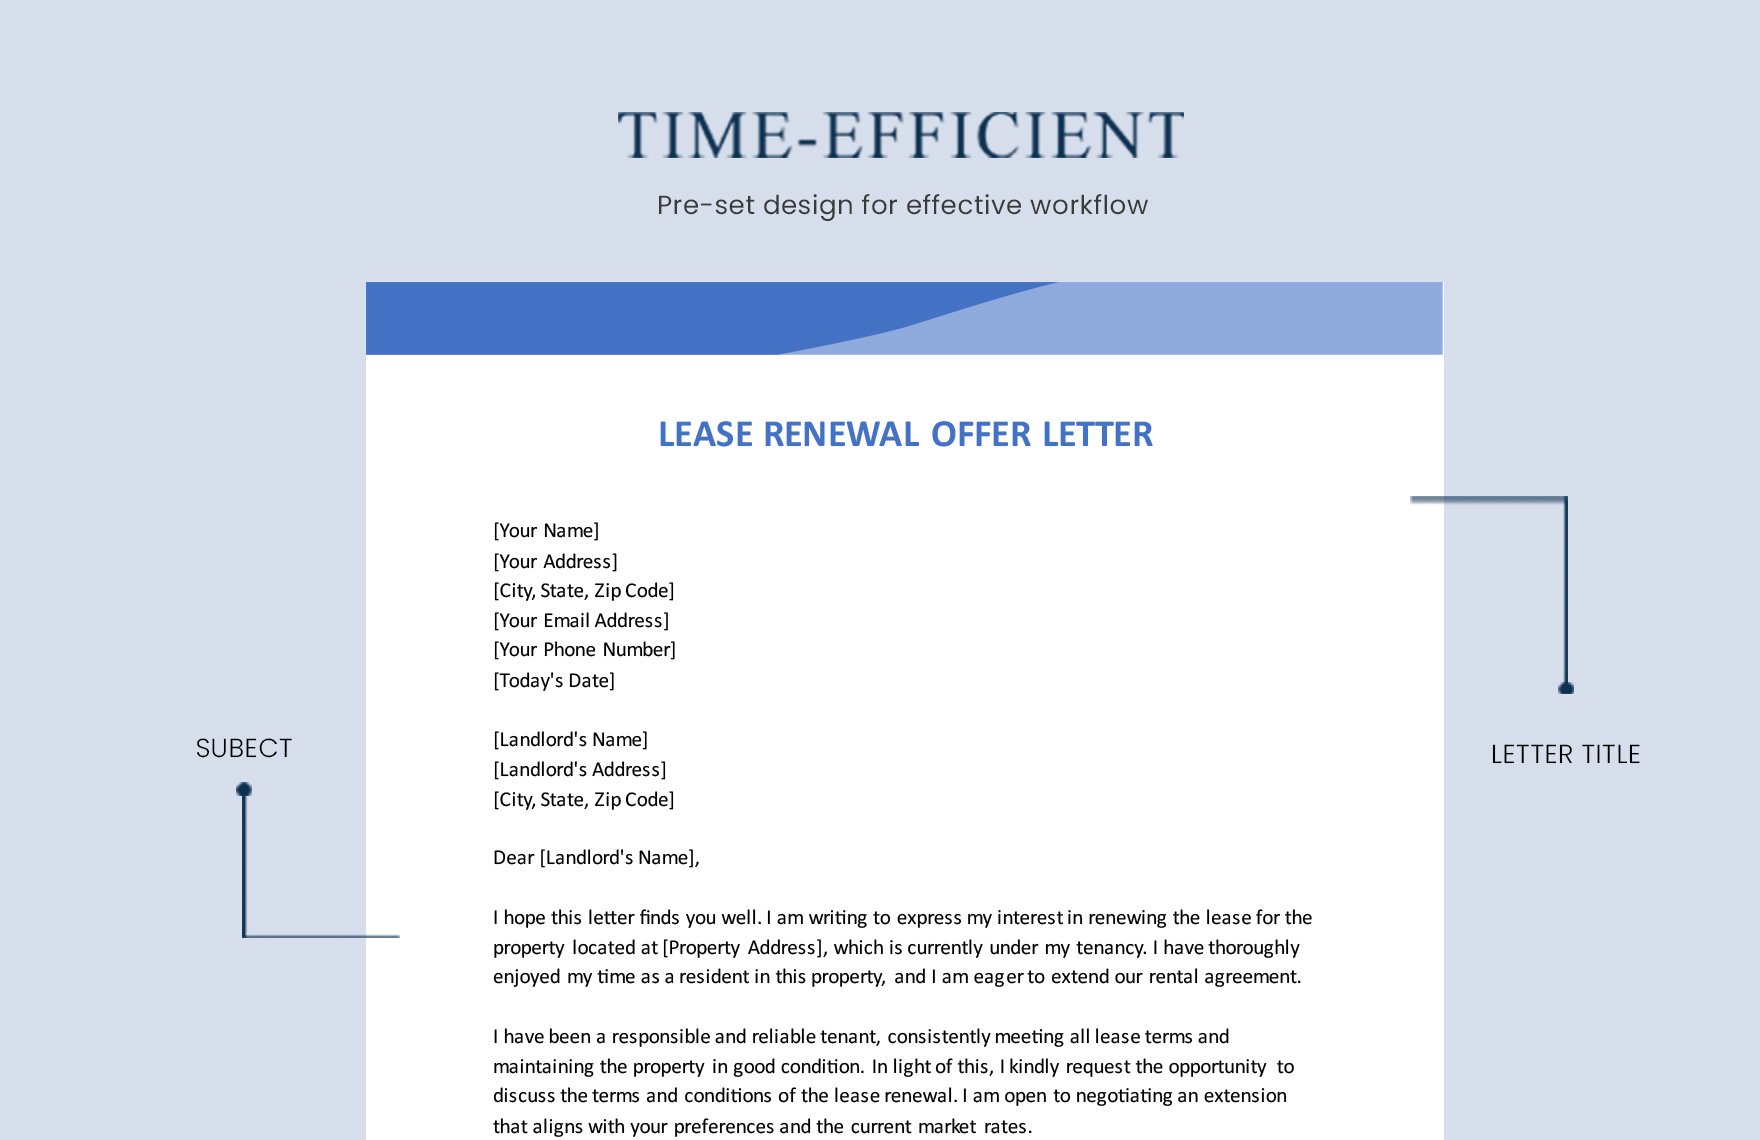 Lease Renewal Offer Letter